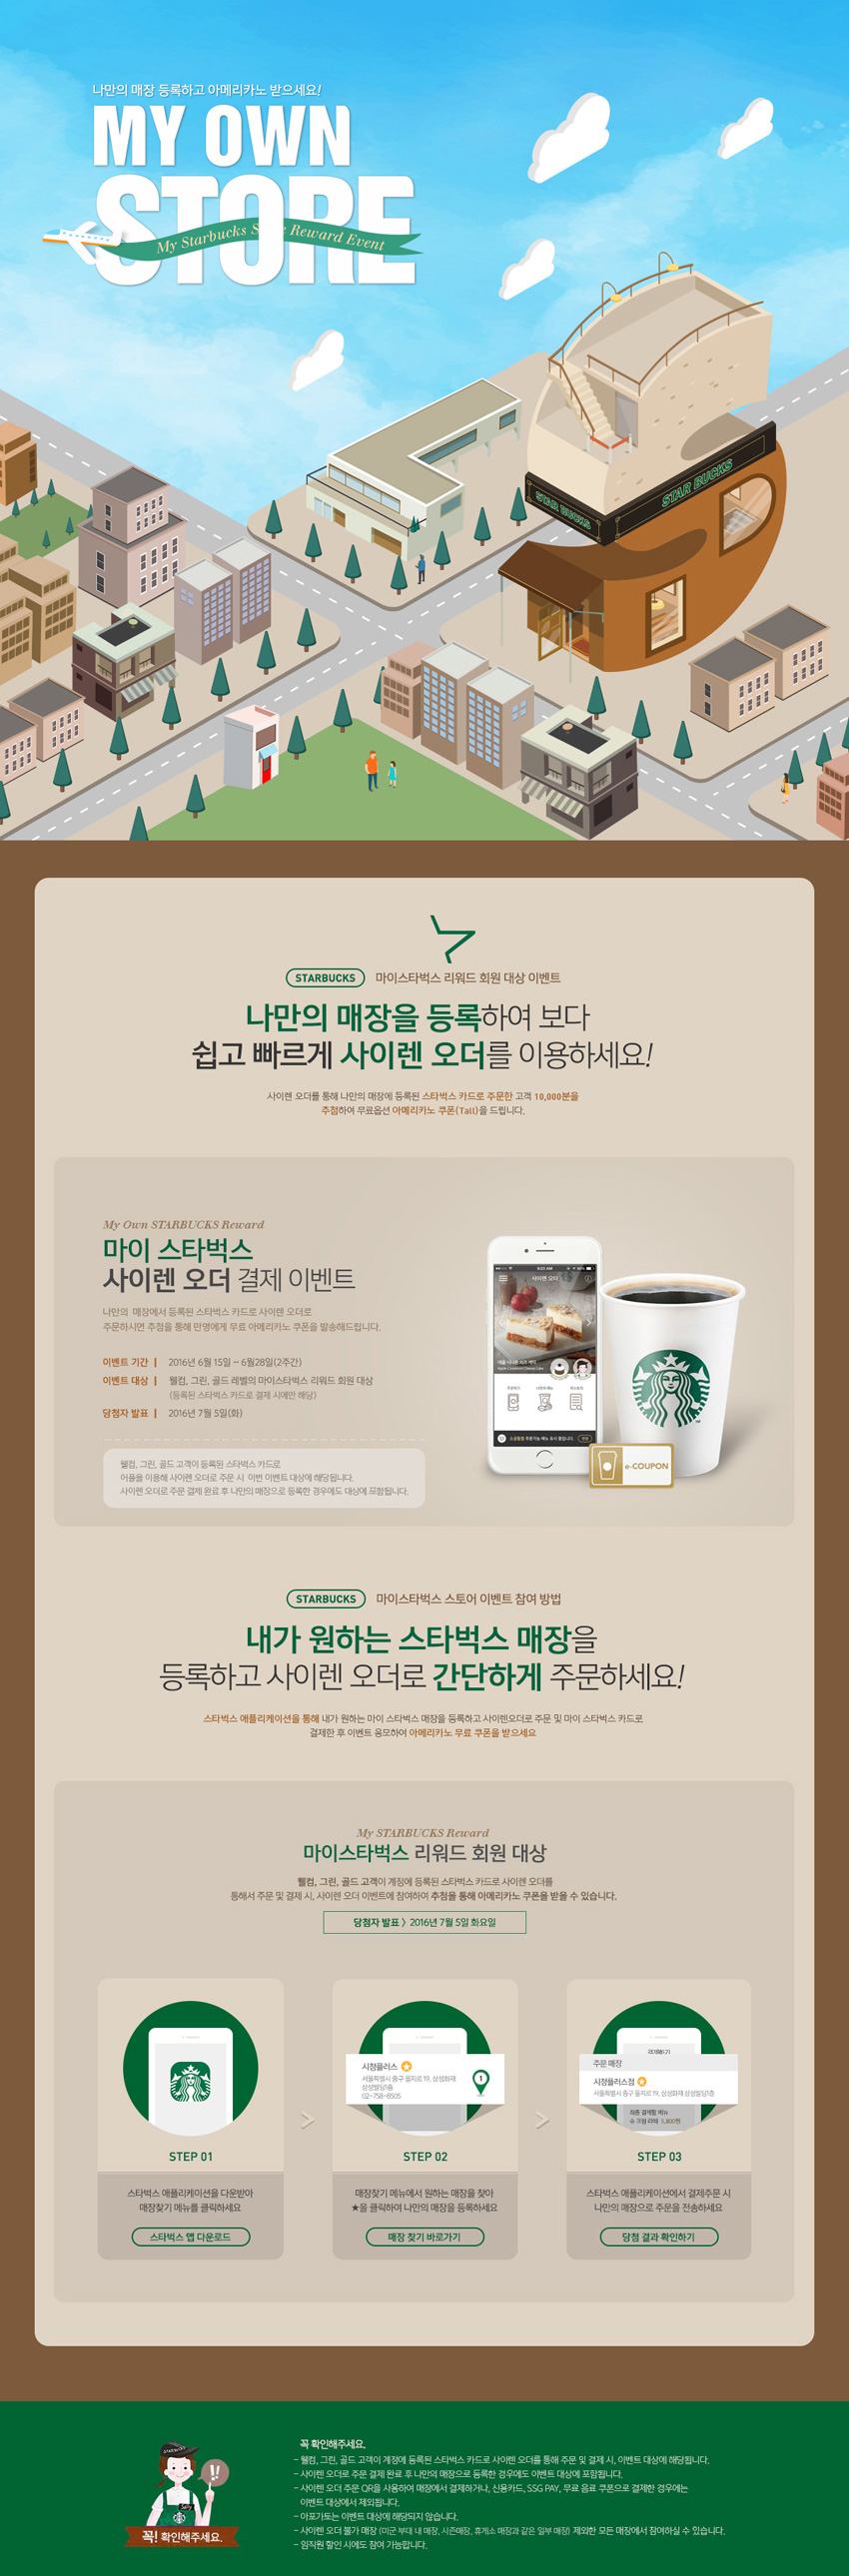 06 Starbucks.jpg